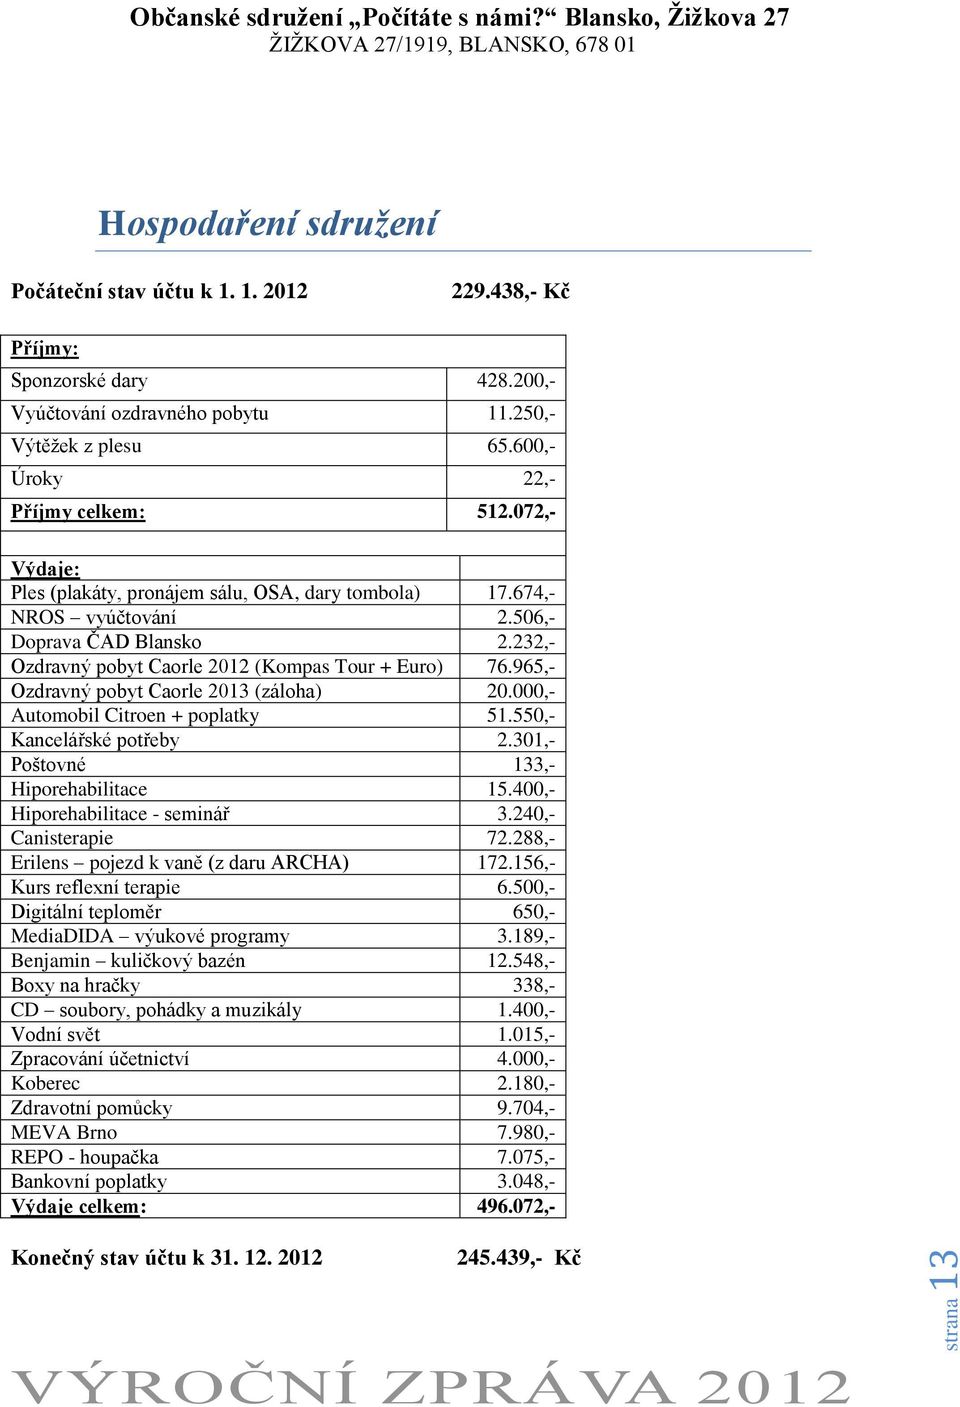 965,- Ozdravný pobyt Caorle 2013 (záloha) 20.000,- Automobil Citroen + poplatky 51.550,- Kancelářské potřeby 2.301,- Poštovné 133,- Hiporehabilitace 15.400,- Hiporehabilitace - seminář 3.